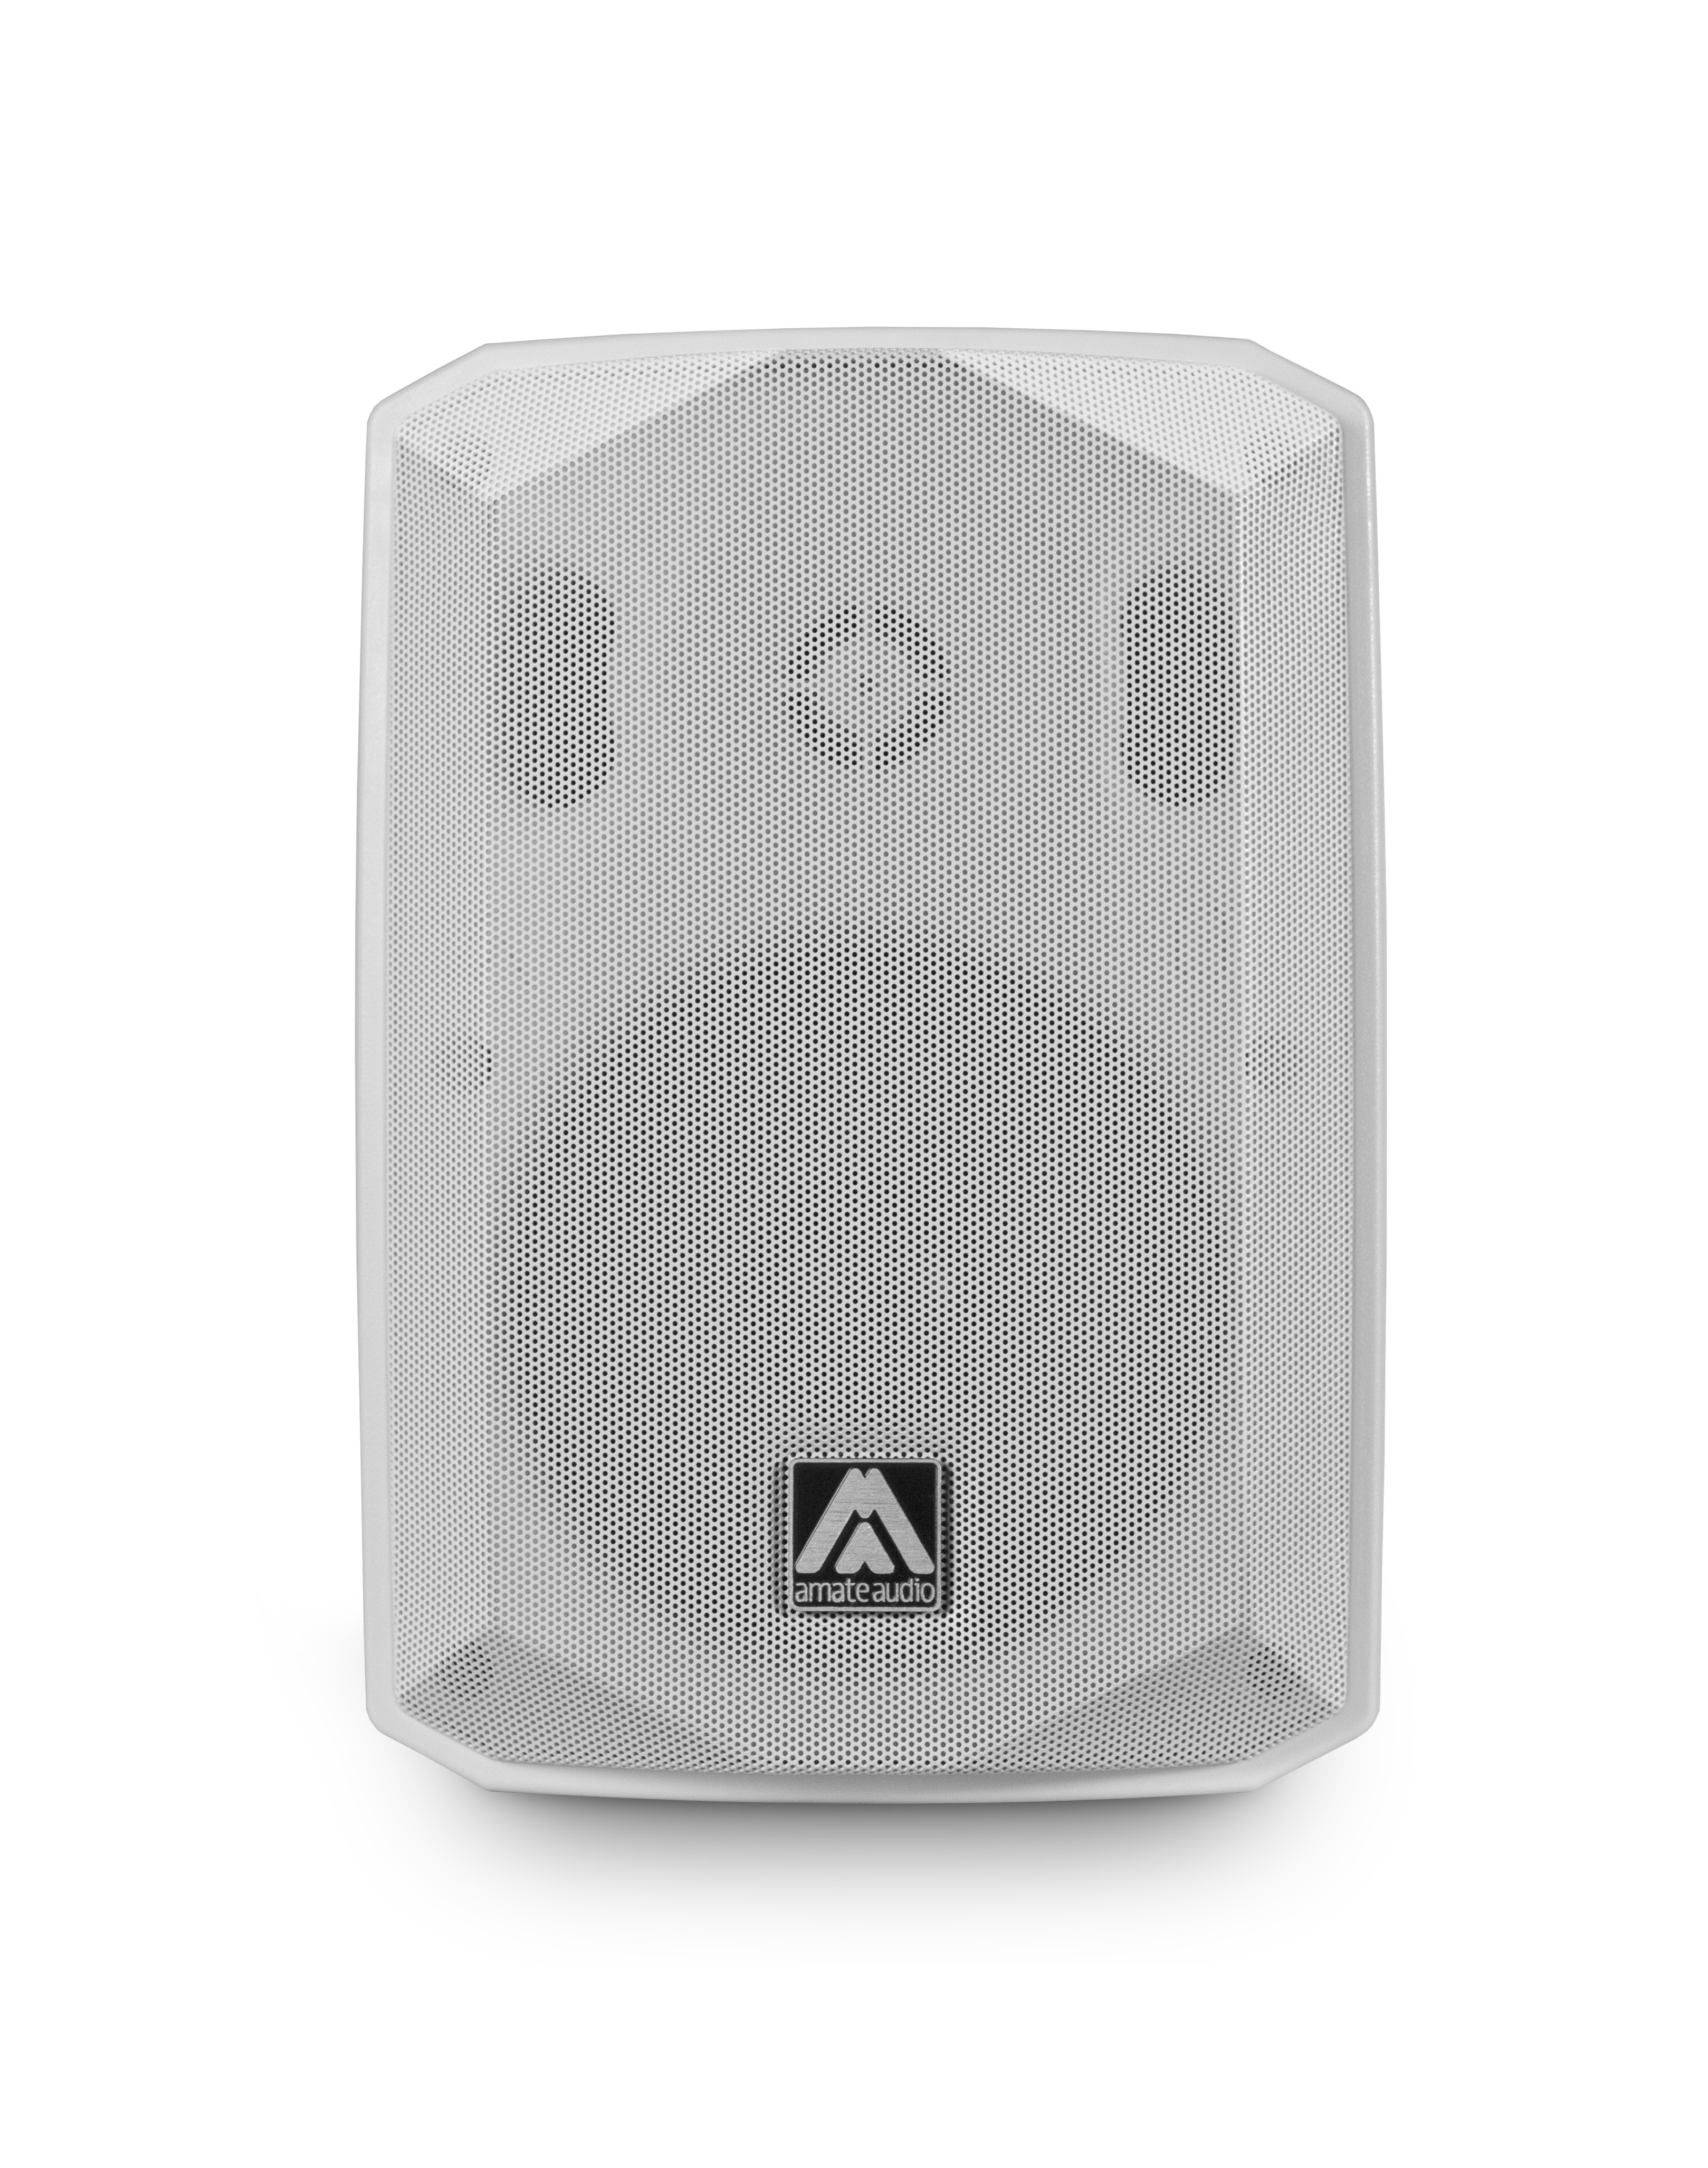 Fullrange Box G7 - Amate Audio